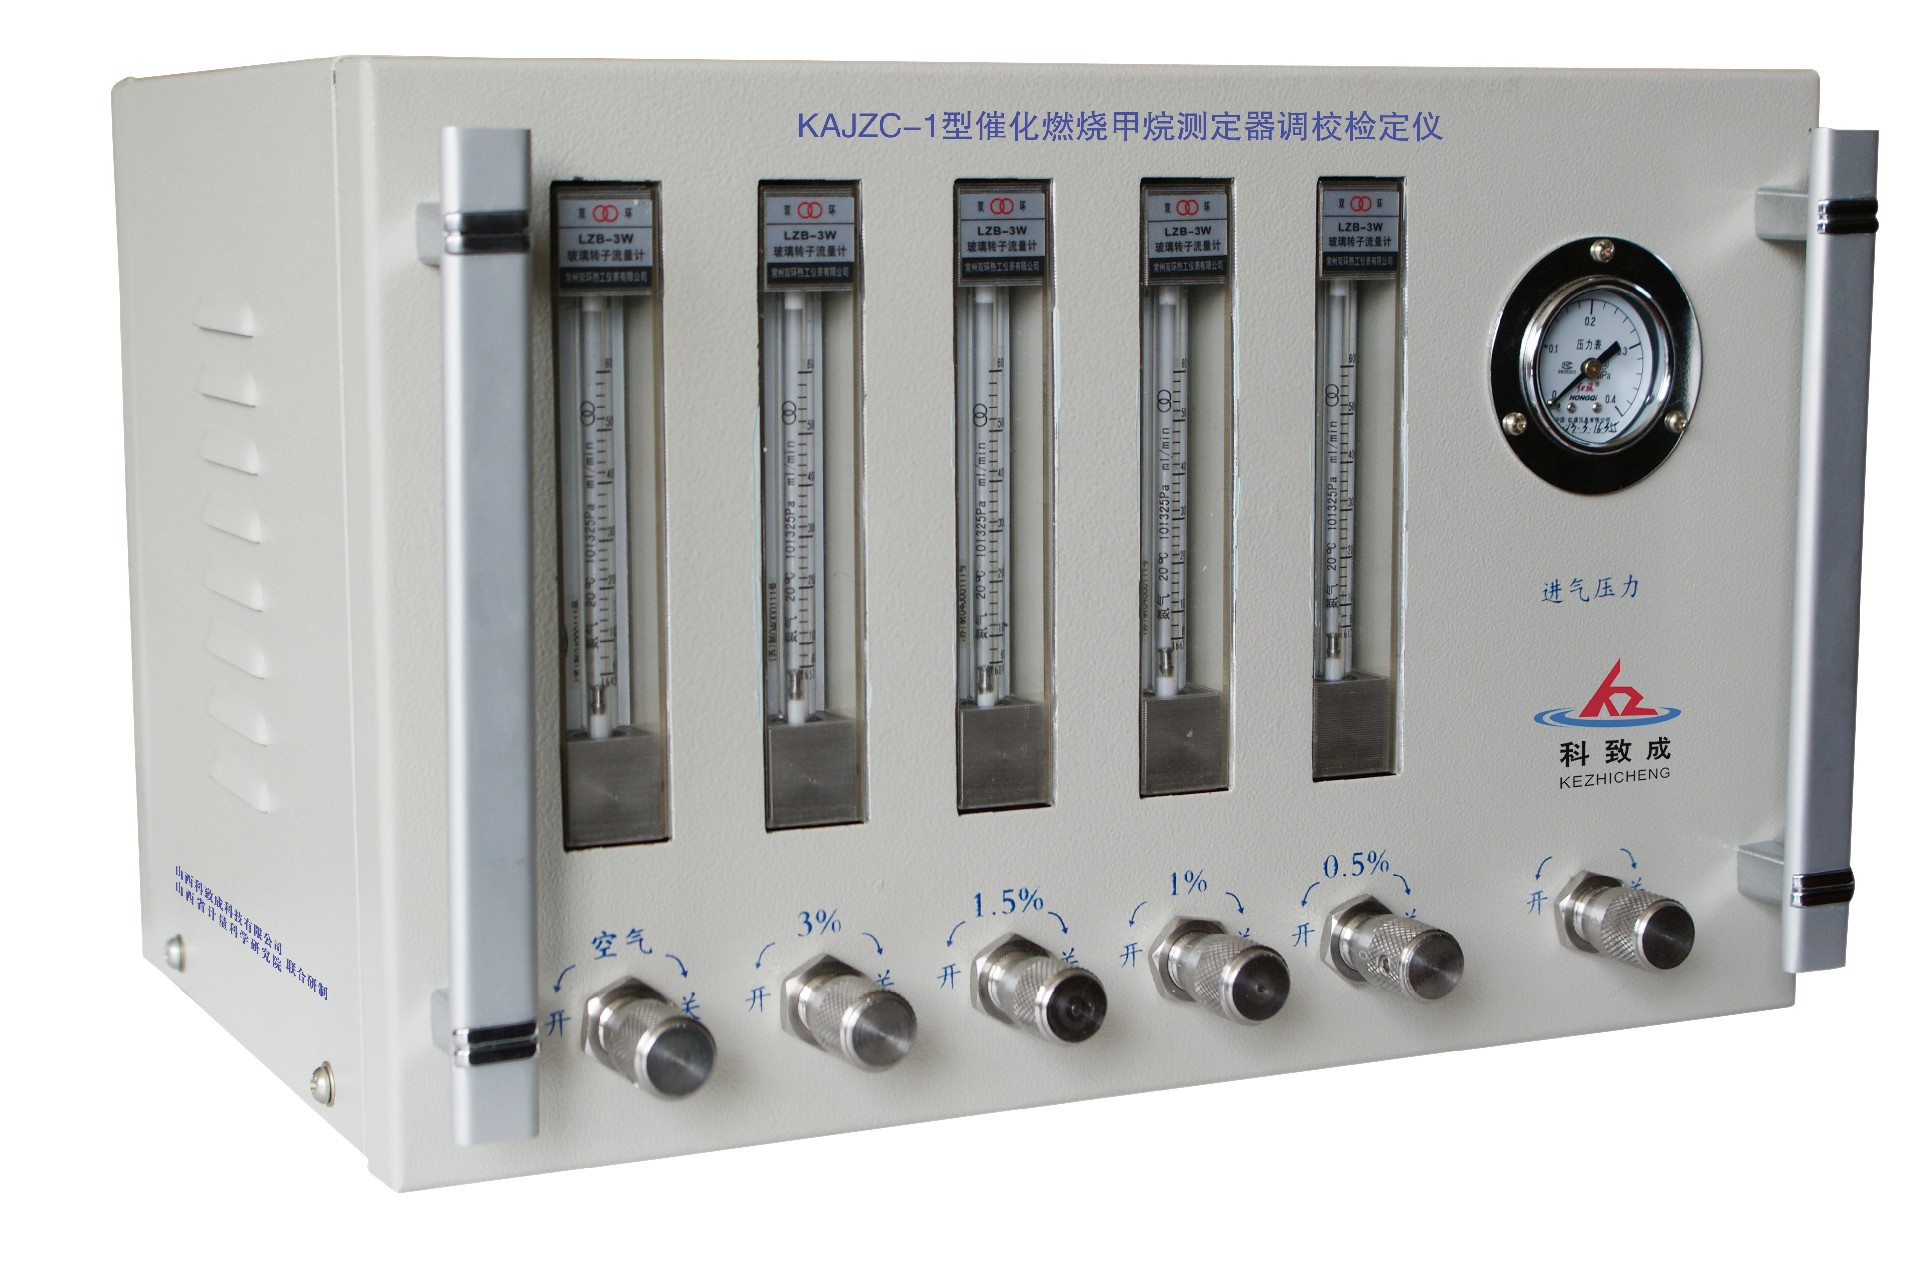 鸡西KAJZC-1型催化燃烧甲烷测定器调校检定仪